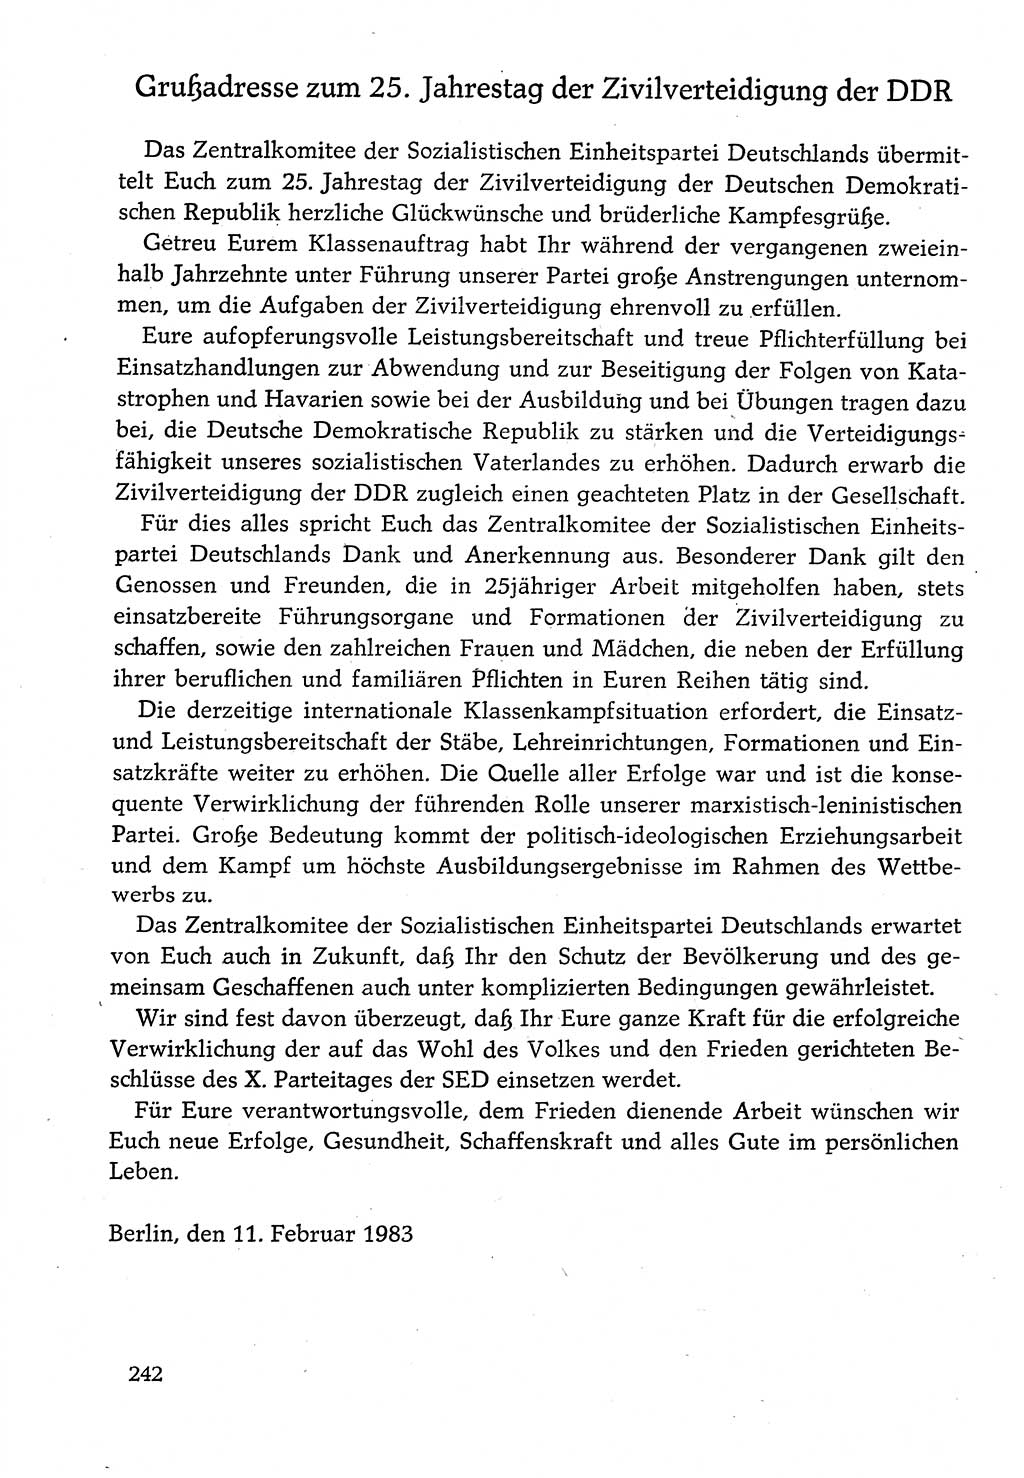 Dokumente der Sozialistischen Einheitspartei Deutschlands (SED) [Deutsche Demokratische Republik (DDR)] 1982-1983, Seite 242 (Dok. SED DDR 1982-1983, S. 242)